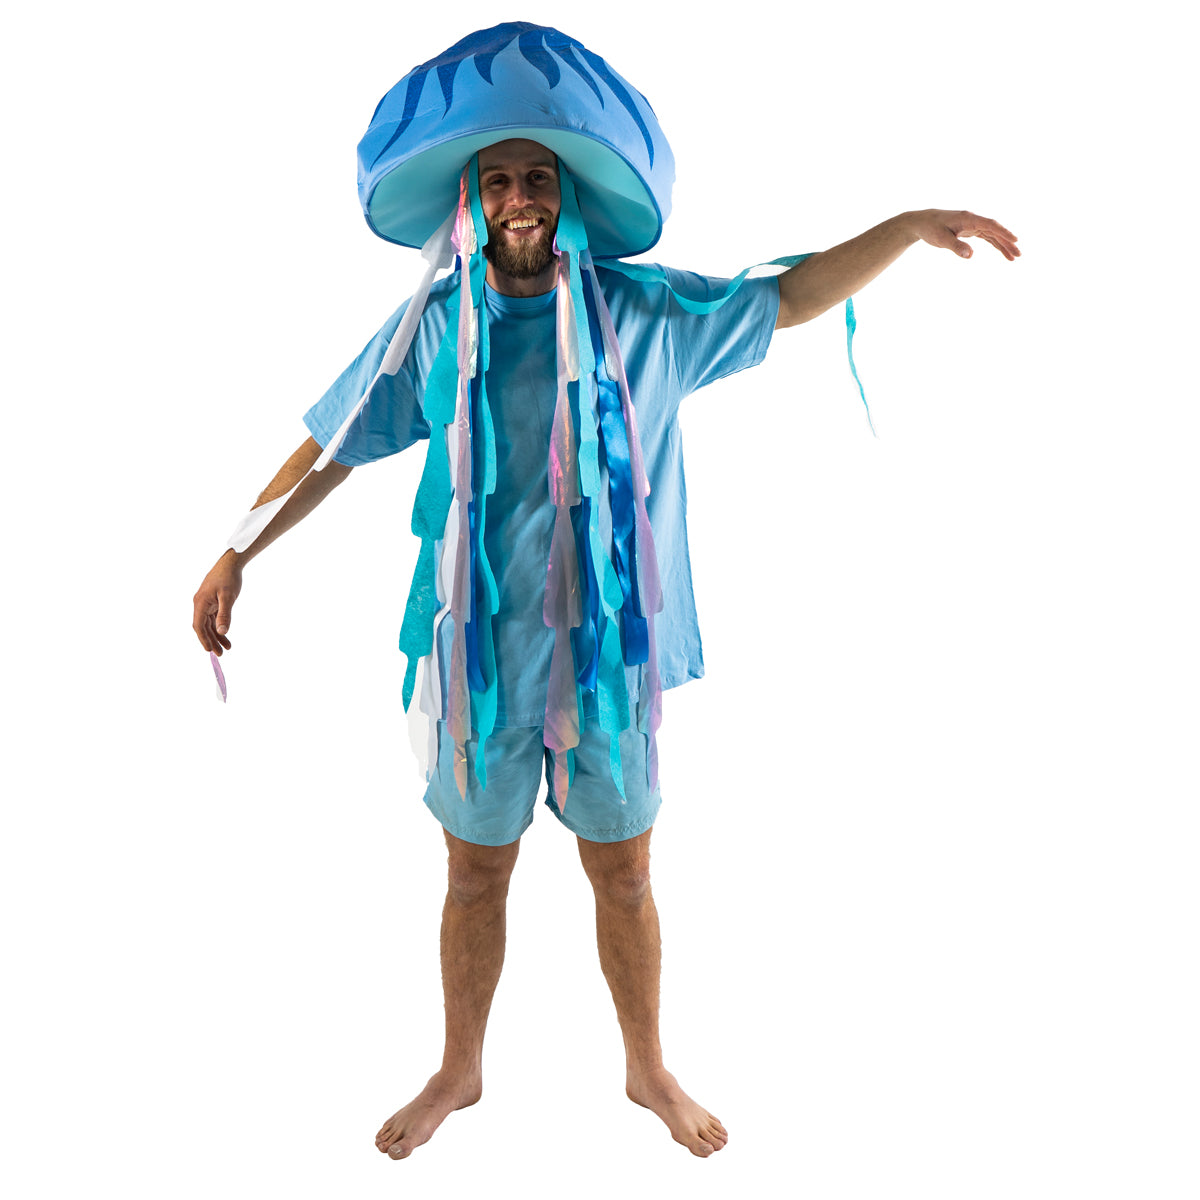 ocean themed costume